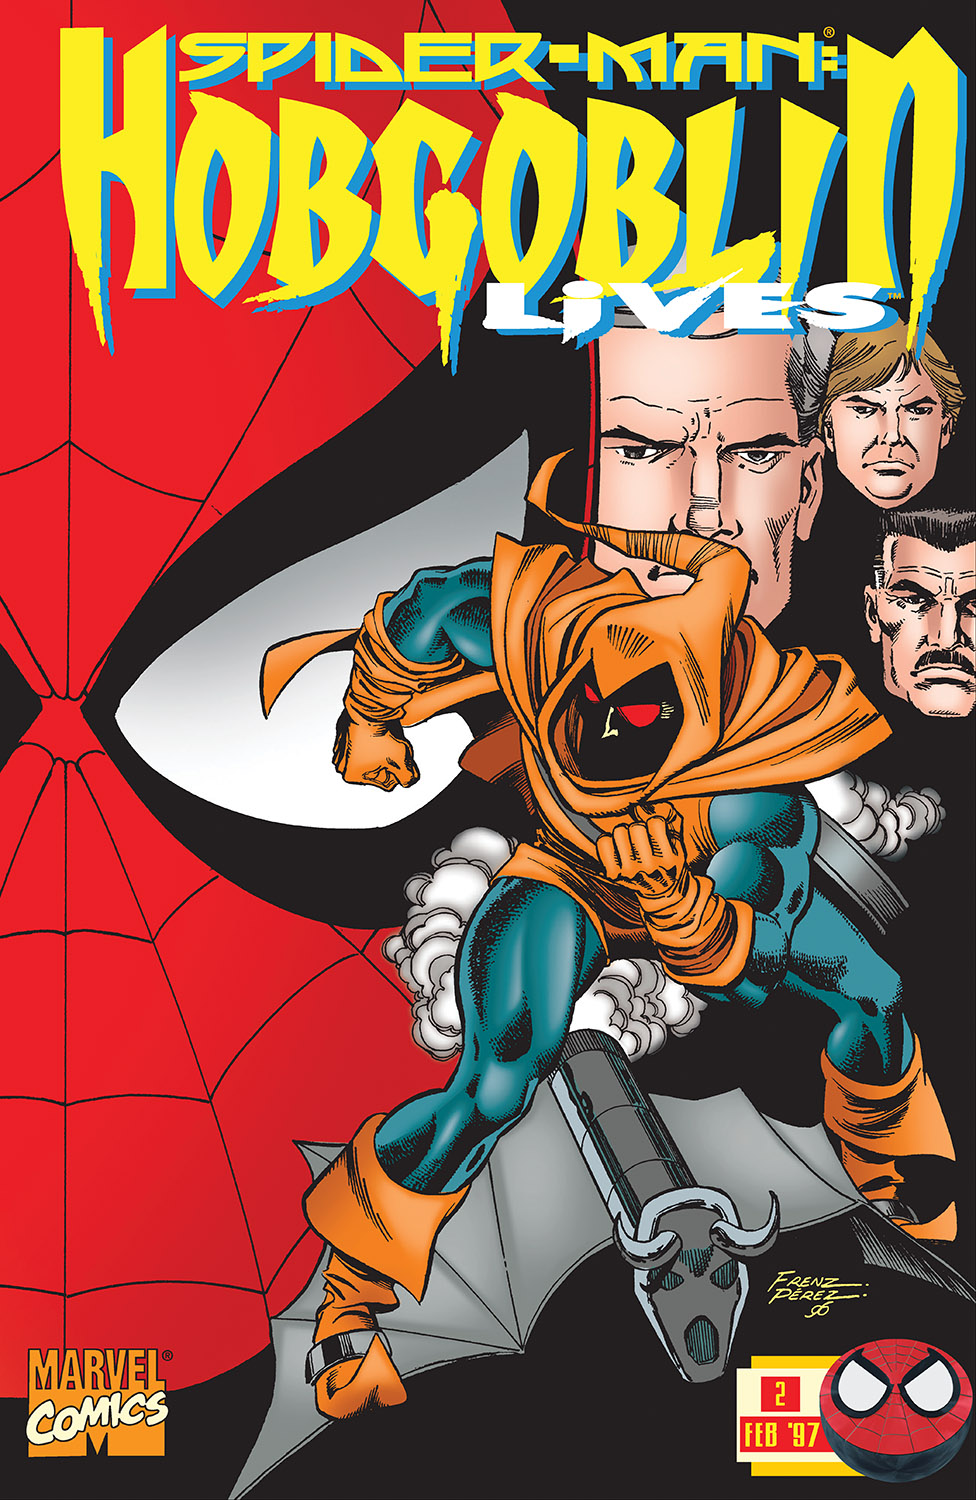 Spider-Man: Hobgoblin Lives (1997) #2